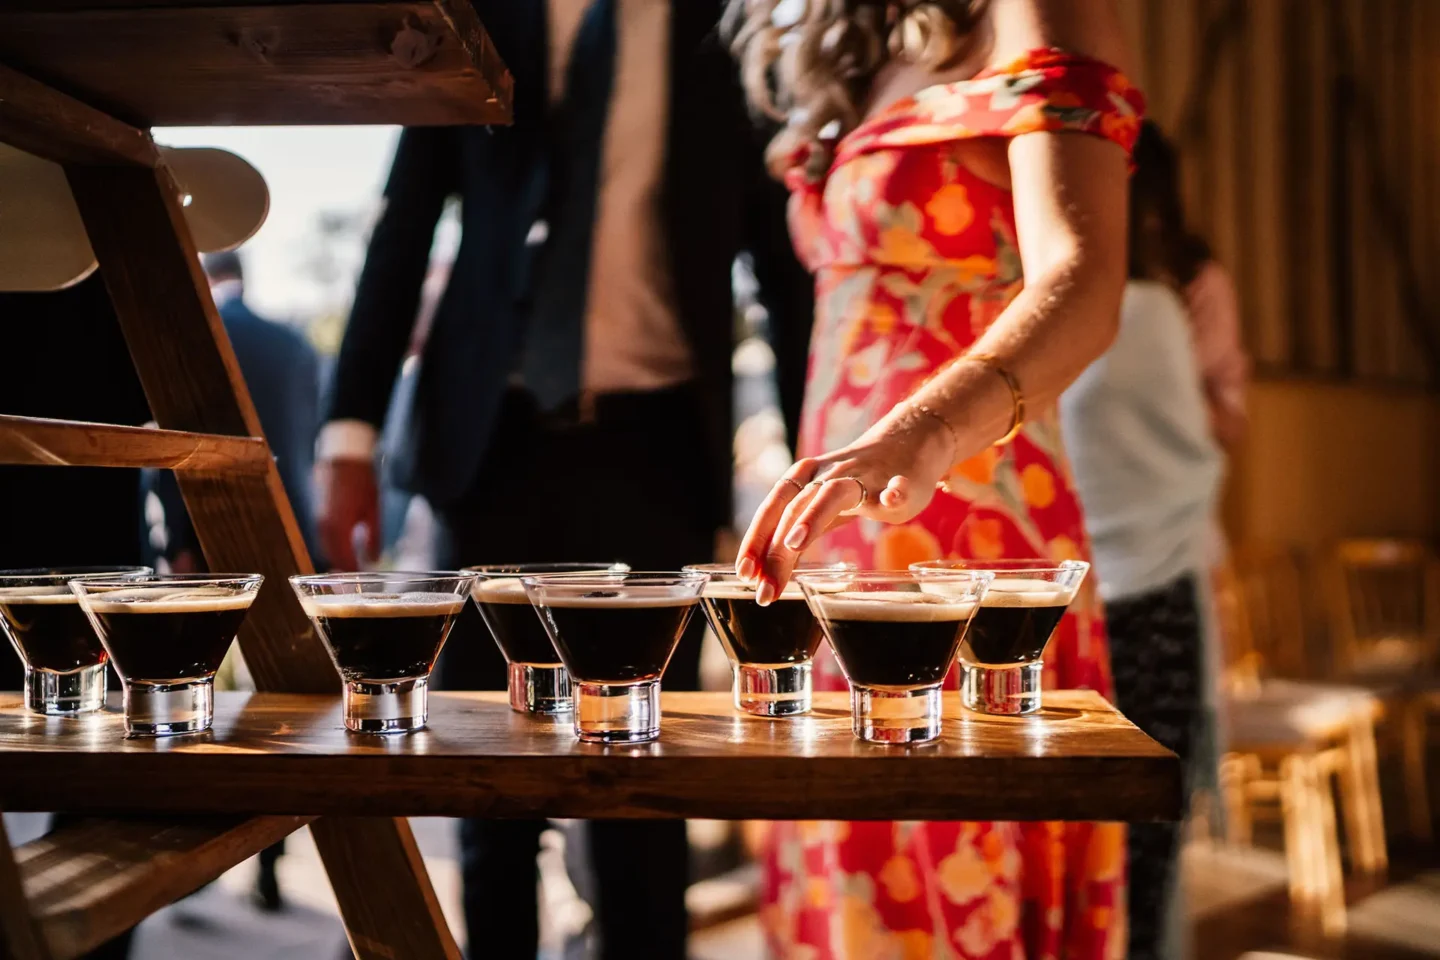 Upwaltham Barns wedding reception espresso martini